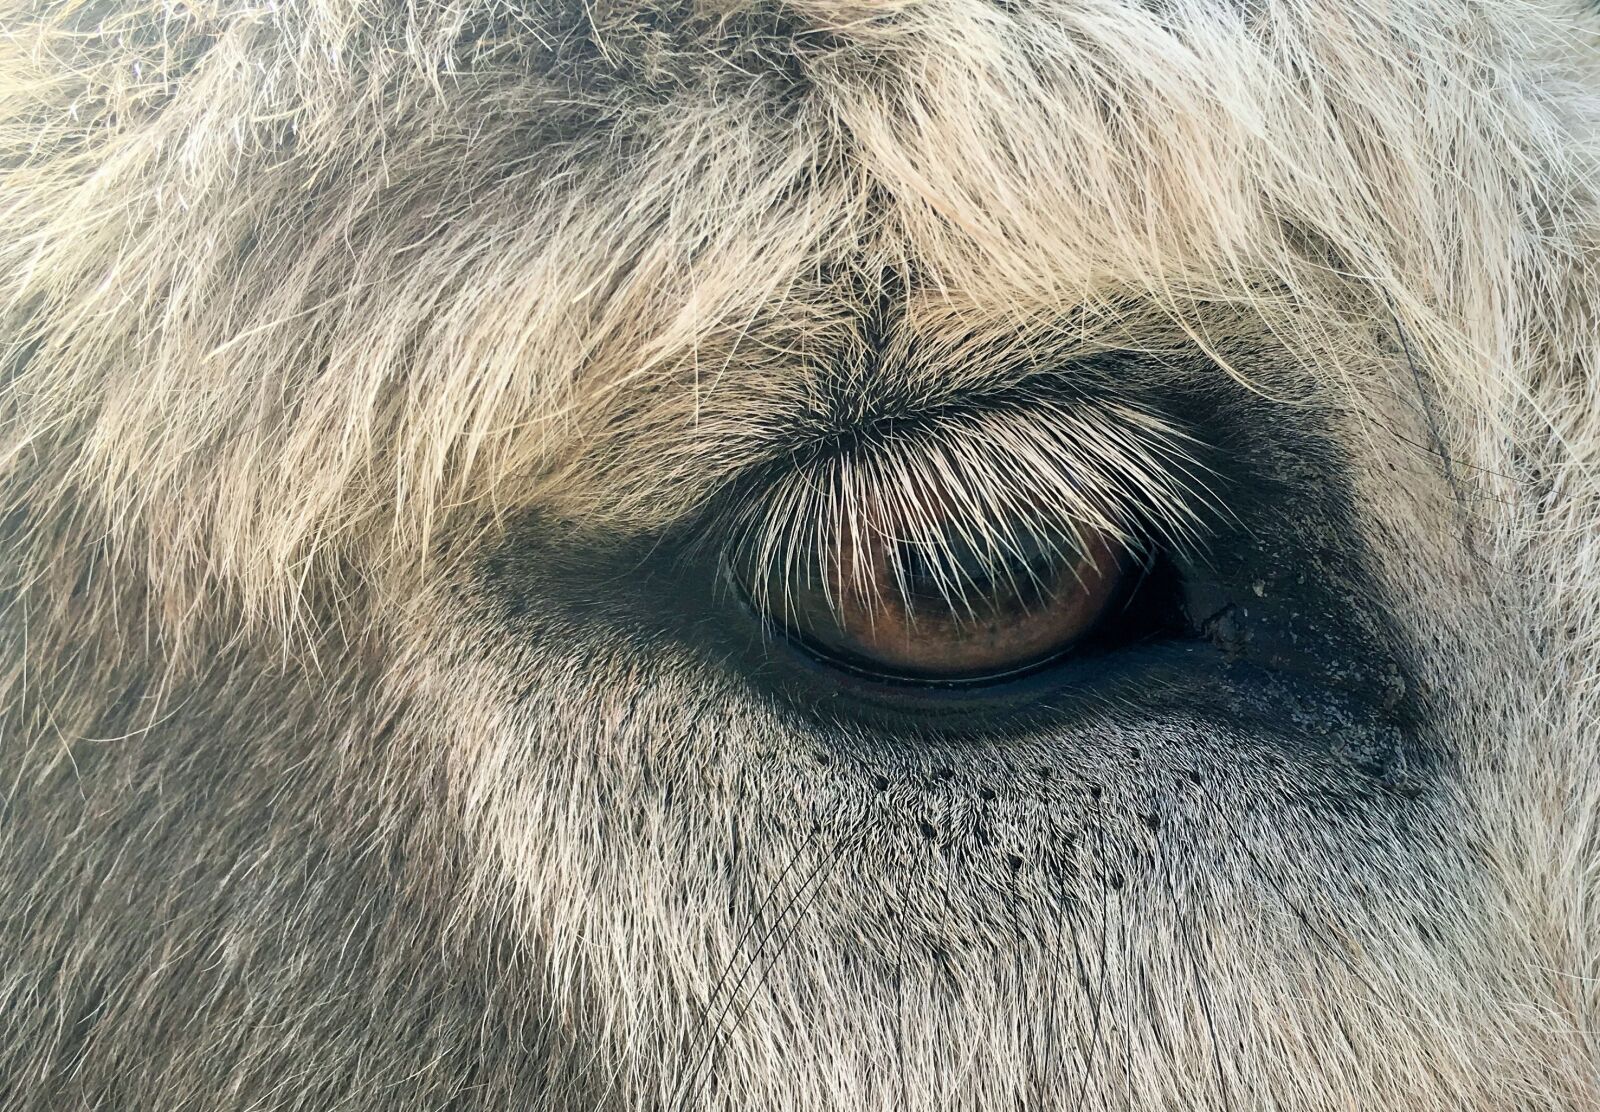 Apple iPhone 6s sample photo. Animal eye, fur, eyelashes photography